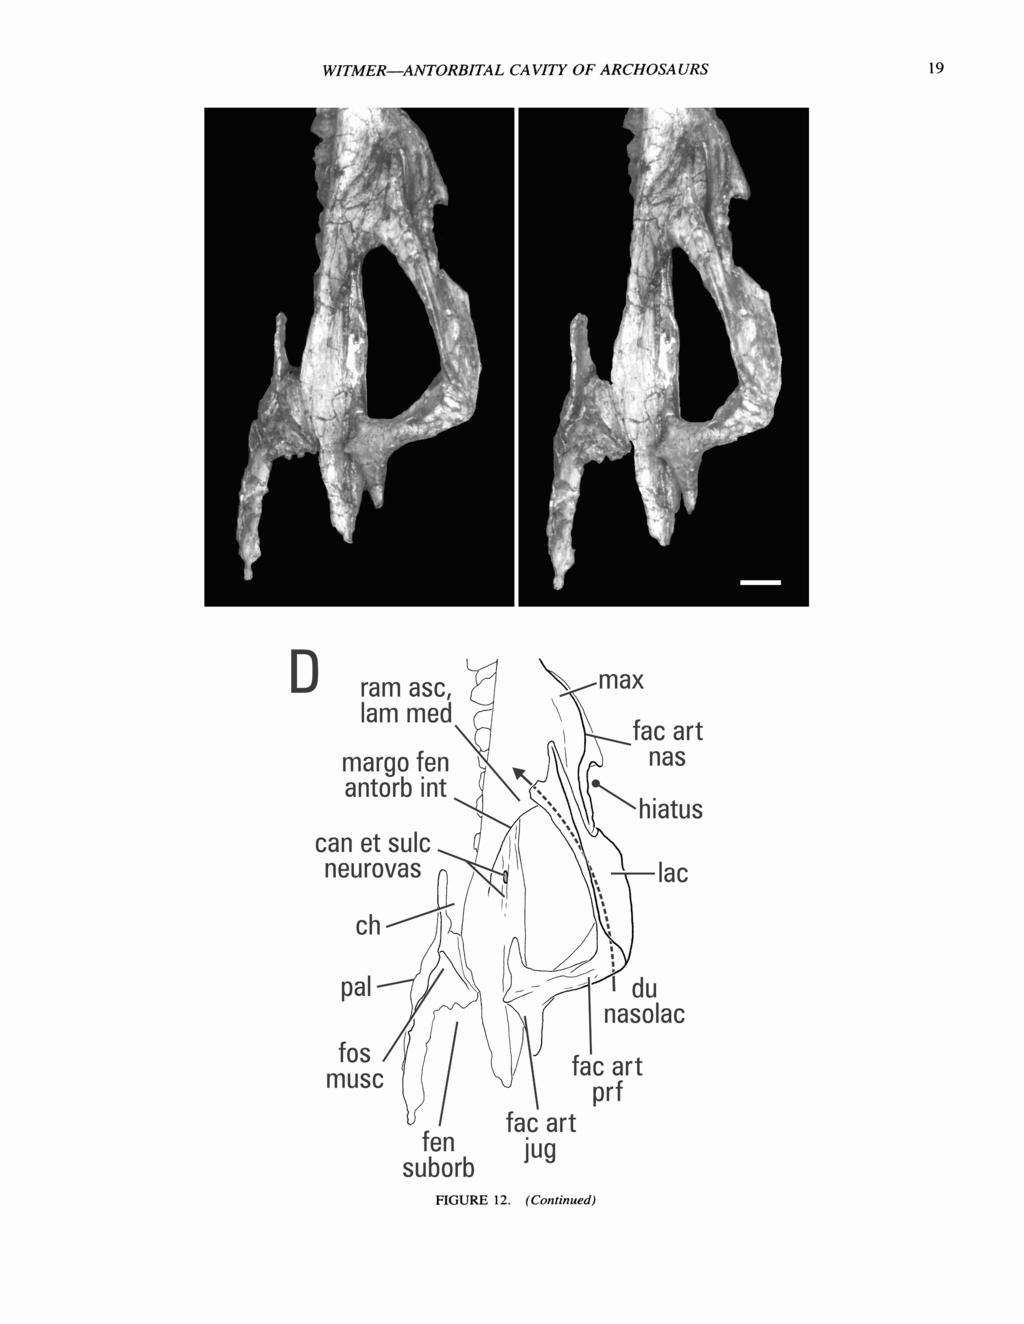 WZTMER-ANTORBITAL CAVITY OF ARCHOSAURS D margo fen can et sulc